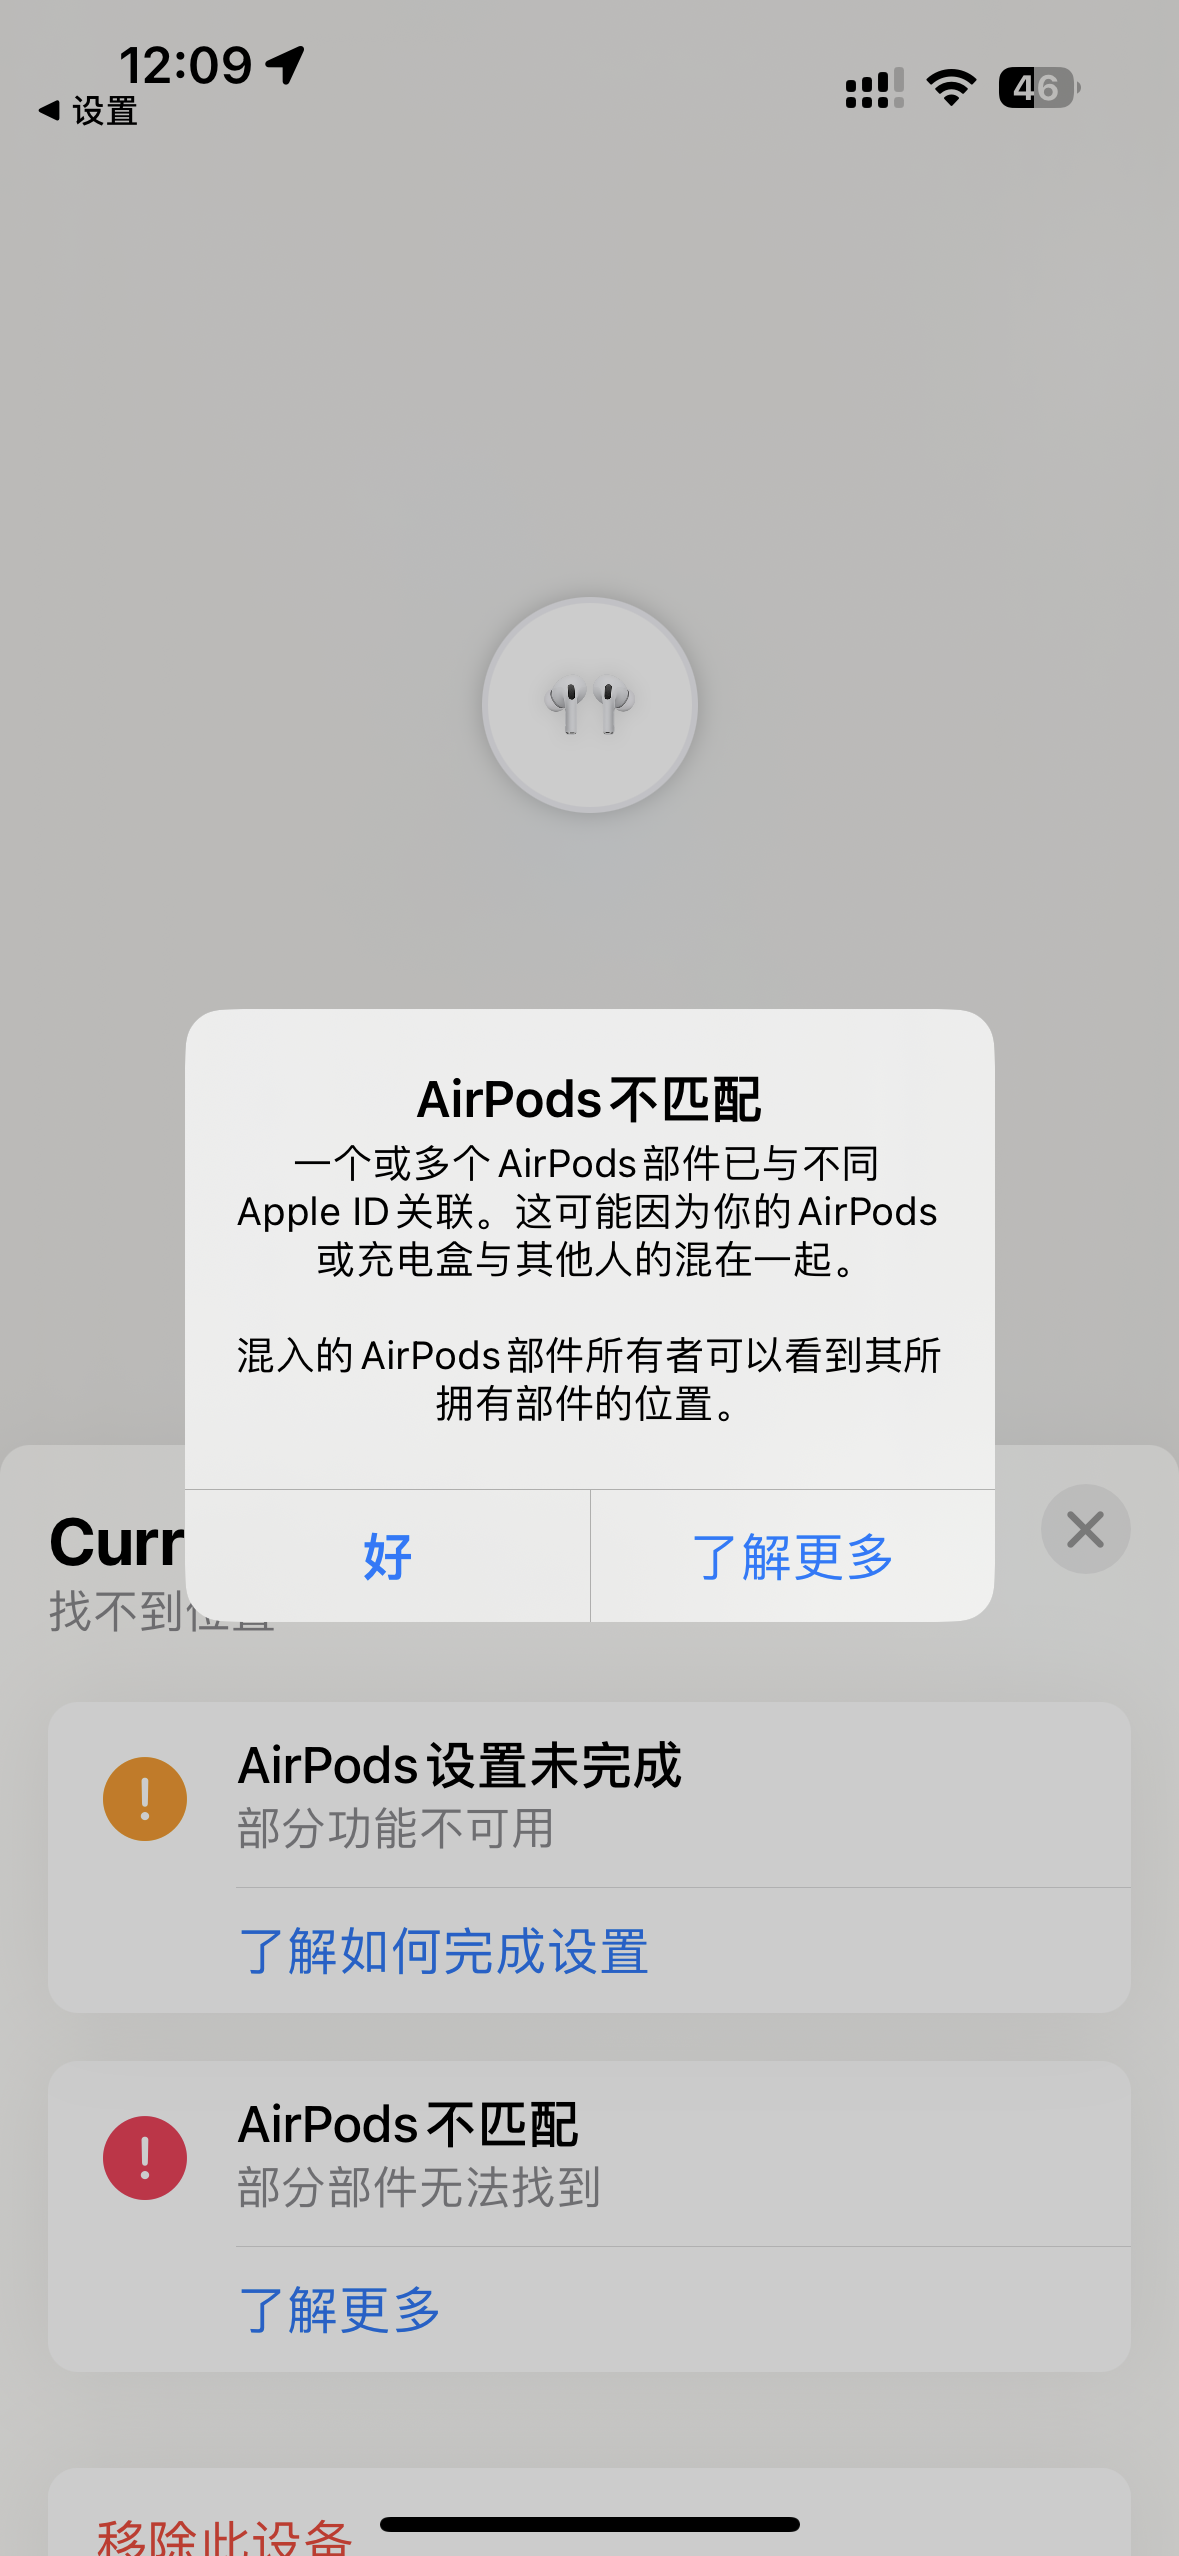 AirPods Pro2无法定位查找部件不匹   Apple 社区